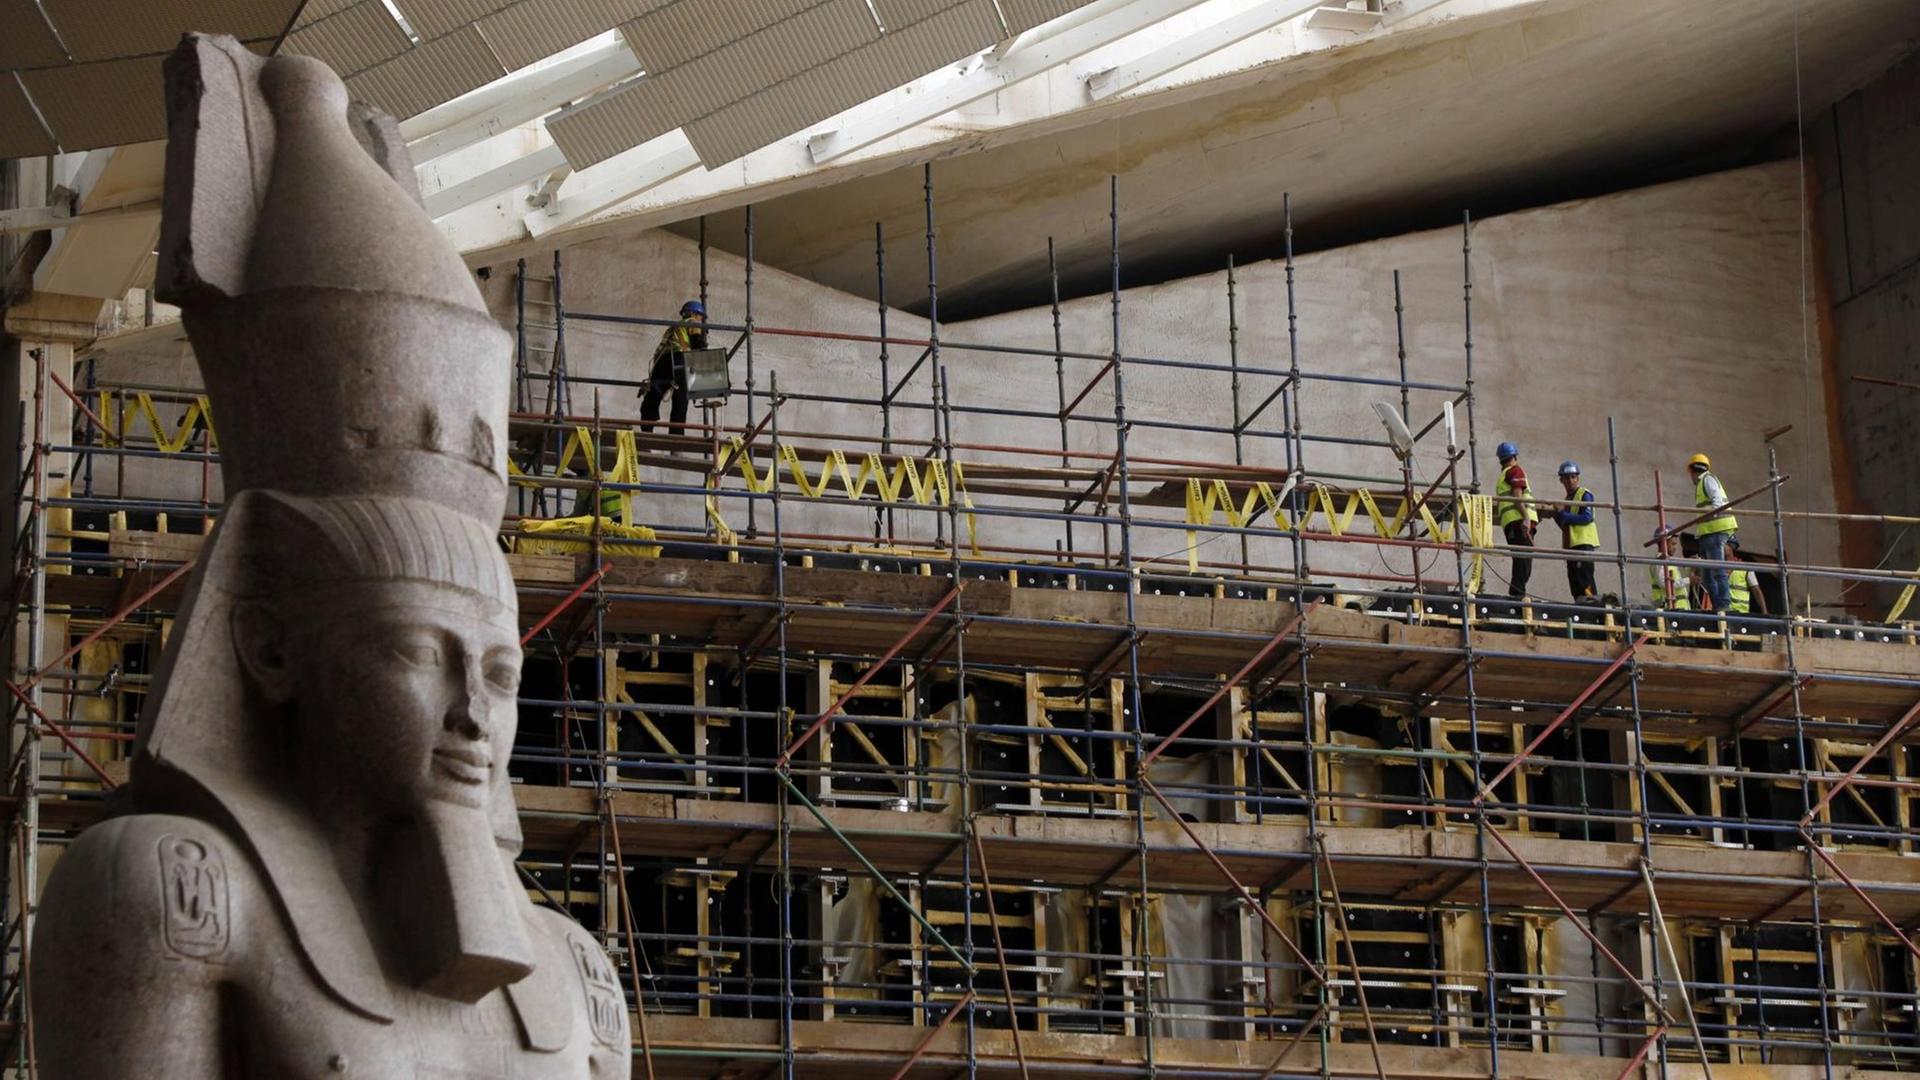 Auf der Baustelle des Großen Ägyptischen Museums in Kairo. Auf einem Baugerüst in großer Höhe stehen Bauarbeiter, links im Vordergrund steht eine riesige Statue eines Pharaos.